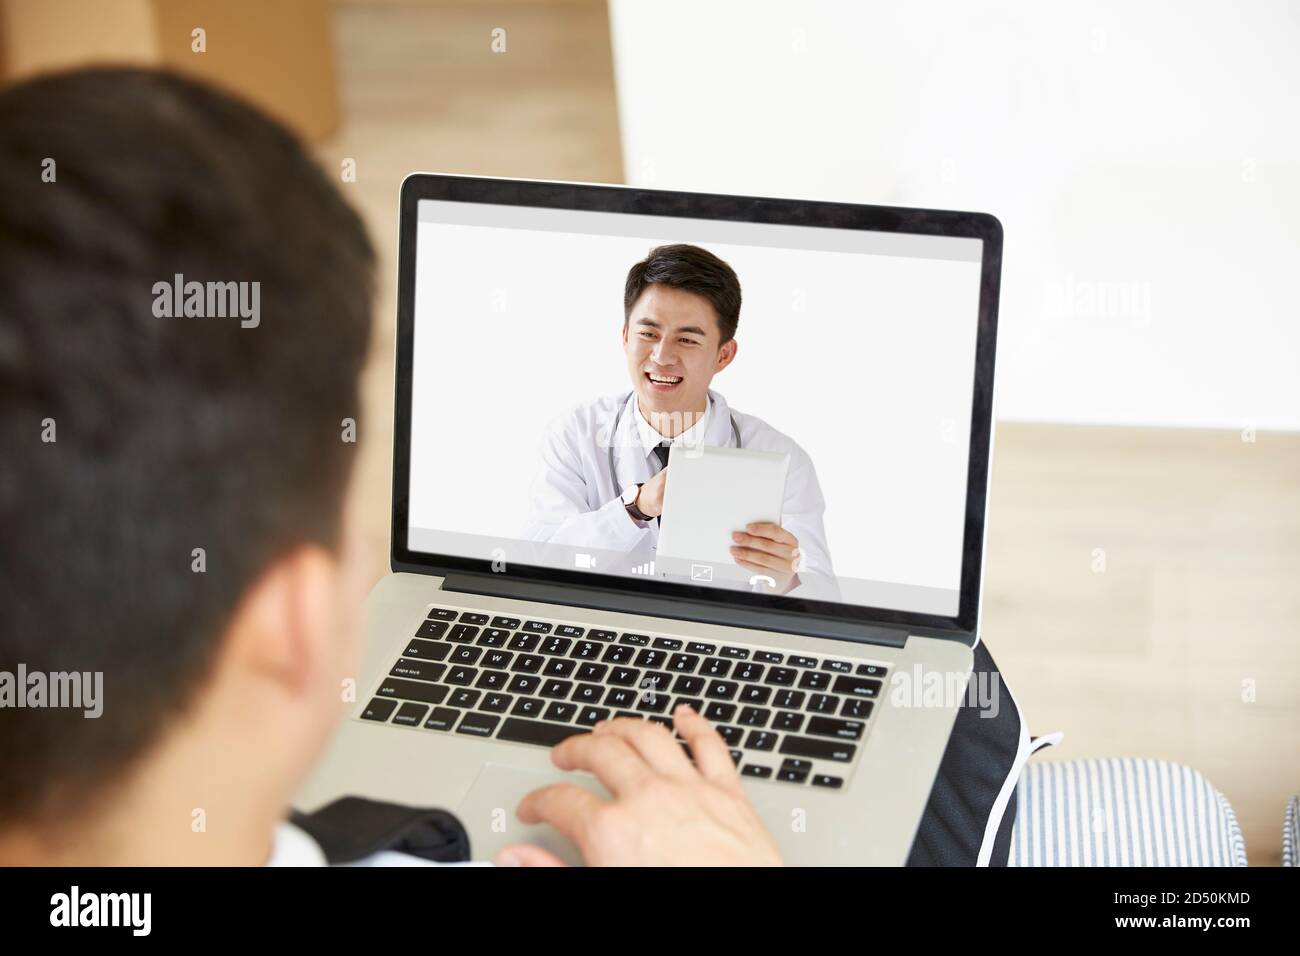 giovane uomo asiatico che rimane a casa consultando medico di primaria cura online tramite chat video utilizzando un computer portatile Foto Stock